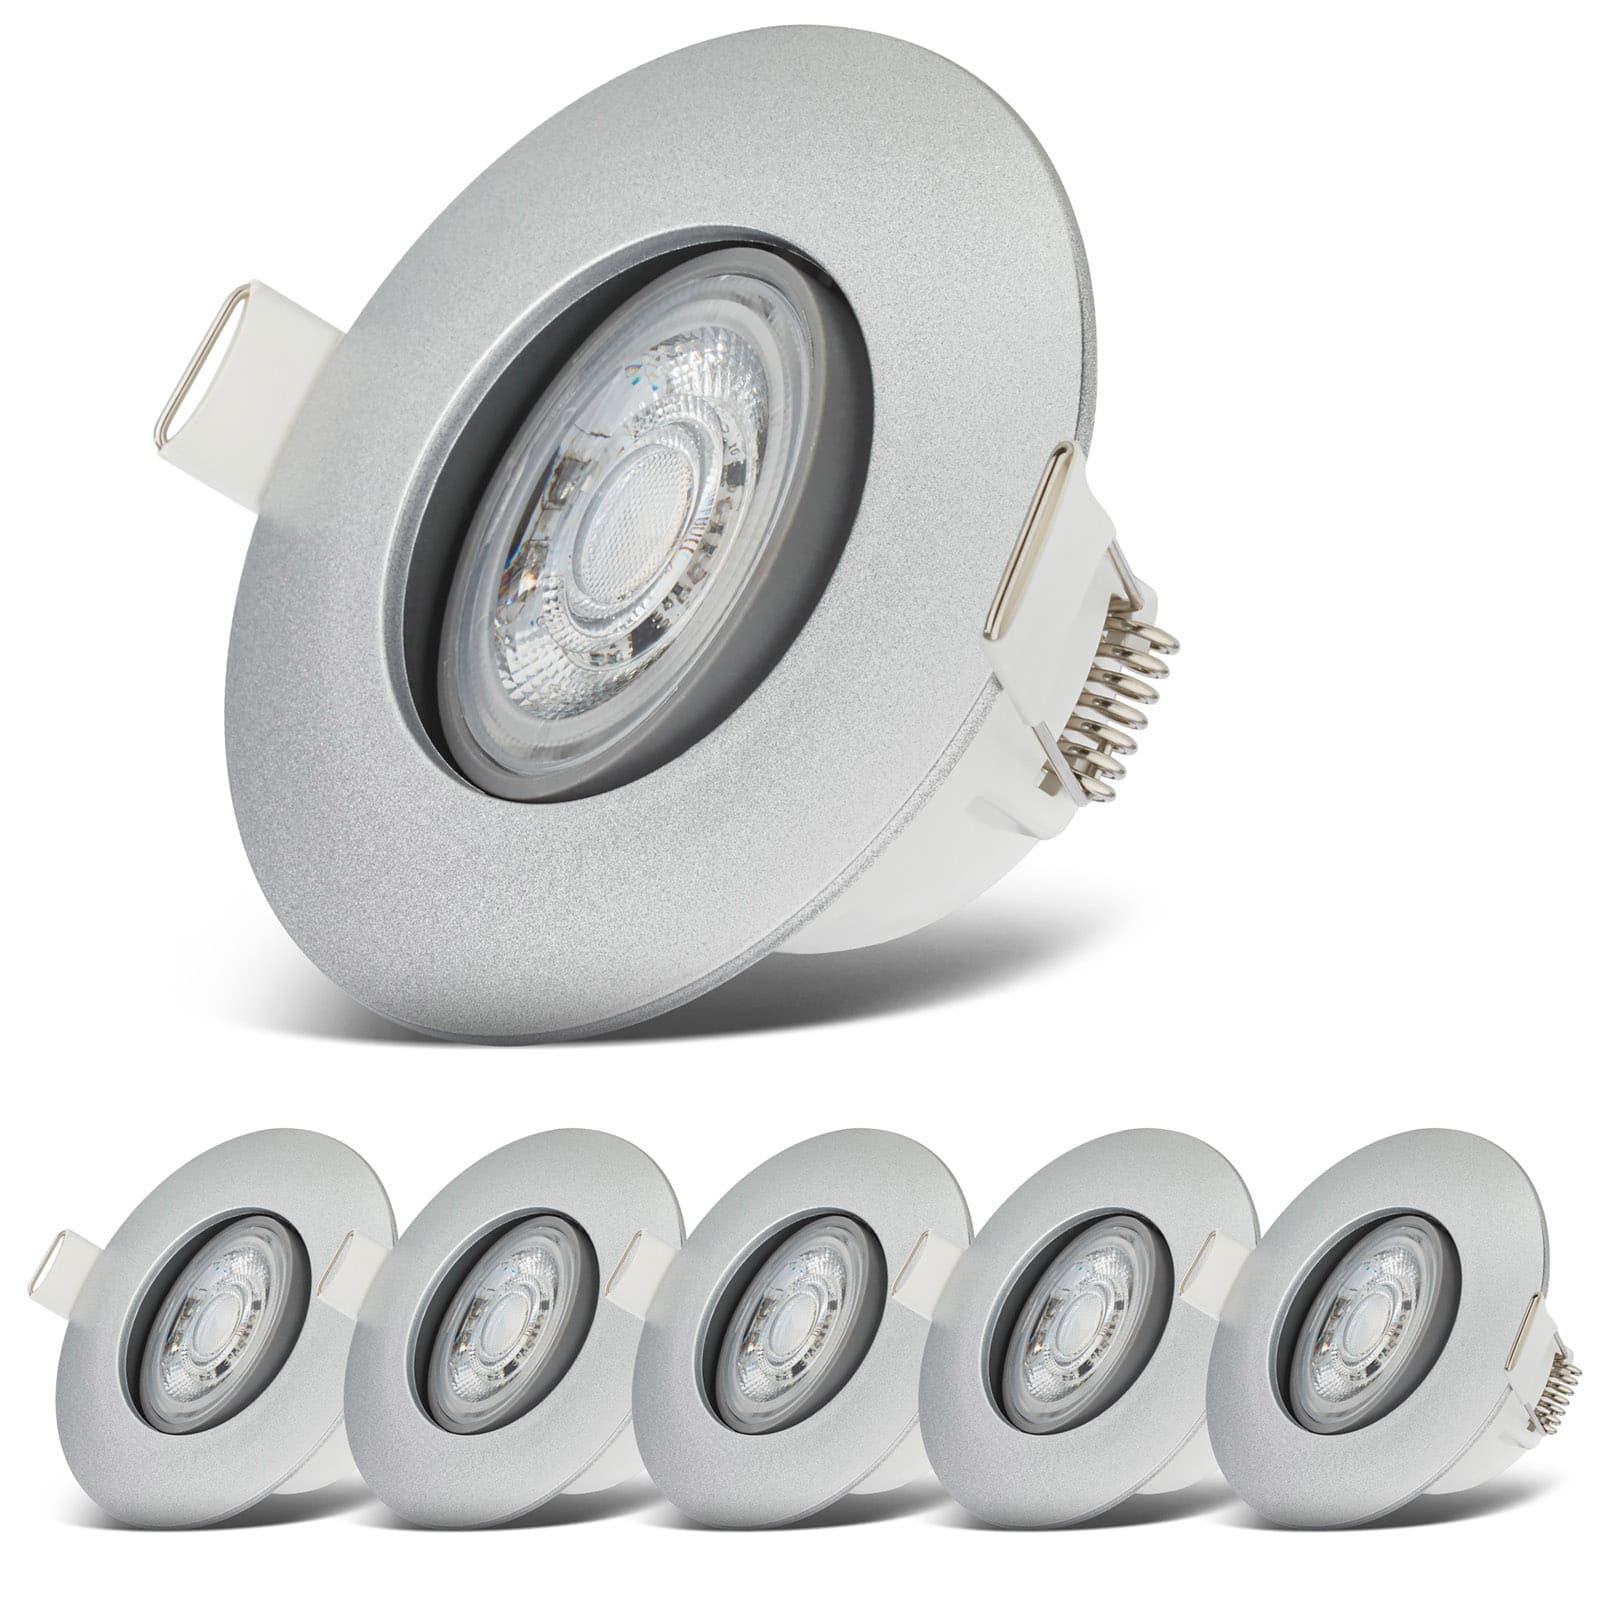 LED Einbaustrahler wasserfest Ø90mm - 6er SET - LED Einbauleuchten schwenkbar Badezimmer IP65 230V 5W 480lm warmweiße Lichtfarbe | Chrom-matt - 7